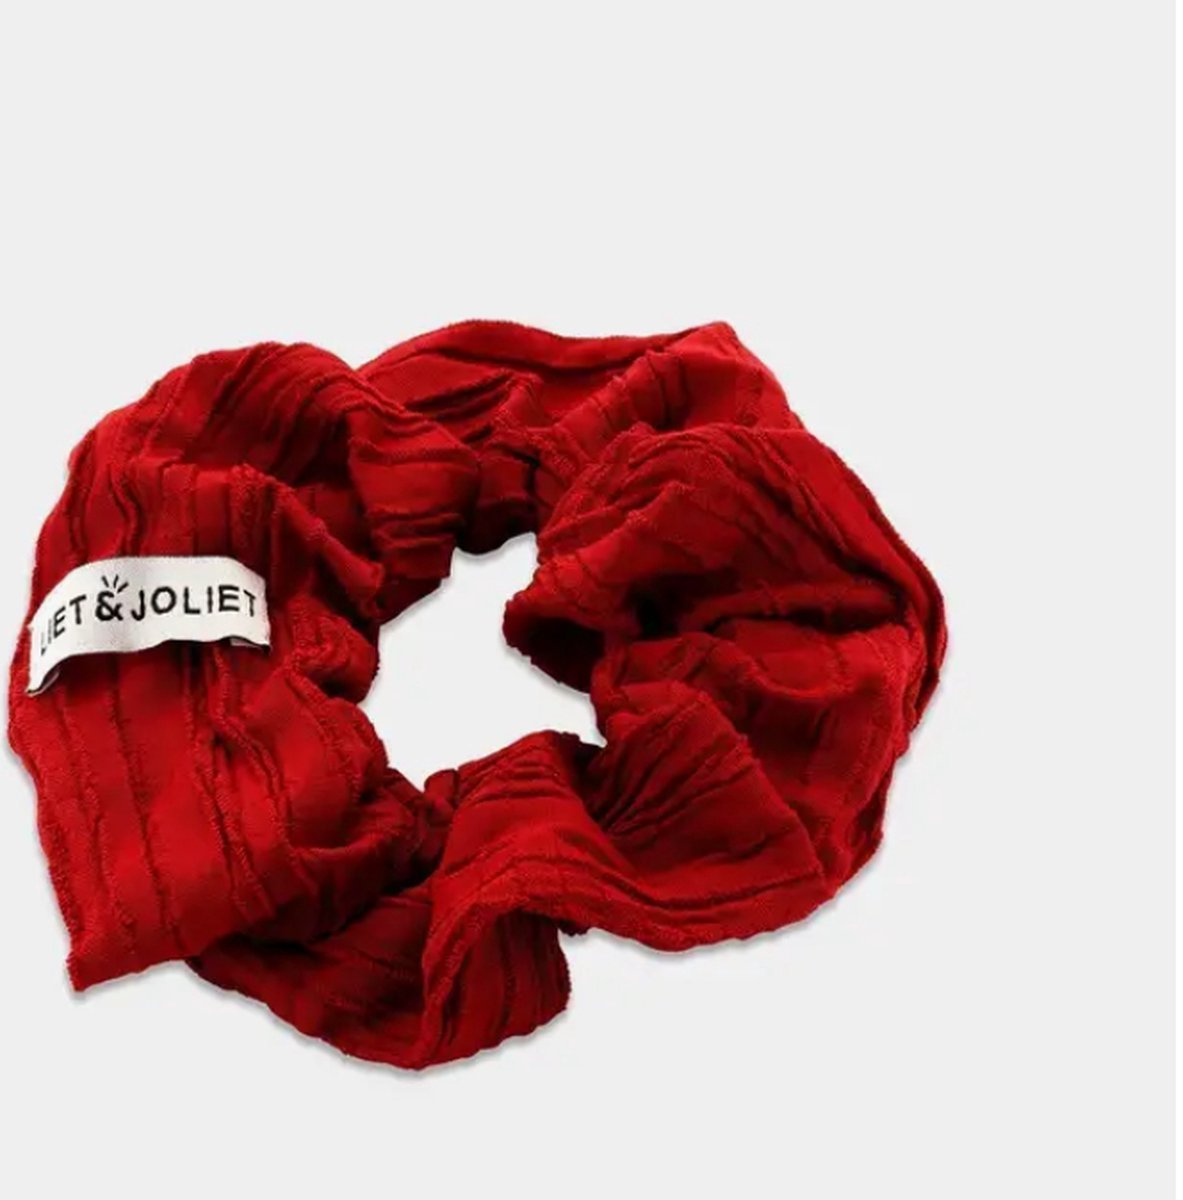 Liet & Joliet scrunchie Jessy red (rood) – geribbelde rode stof